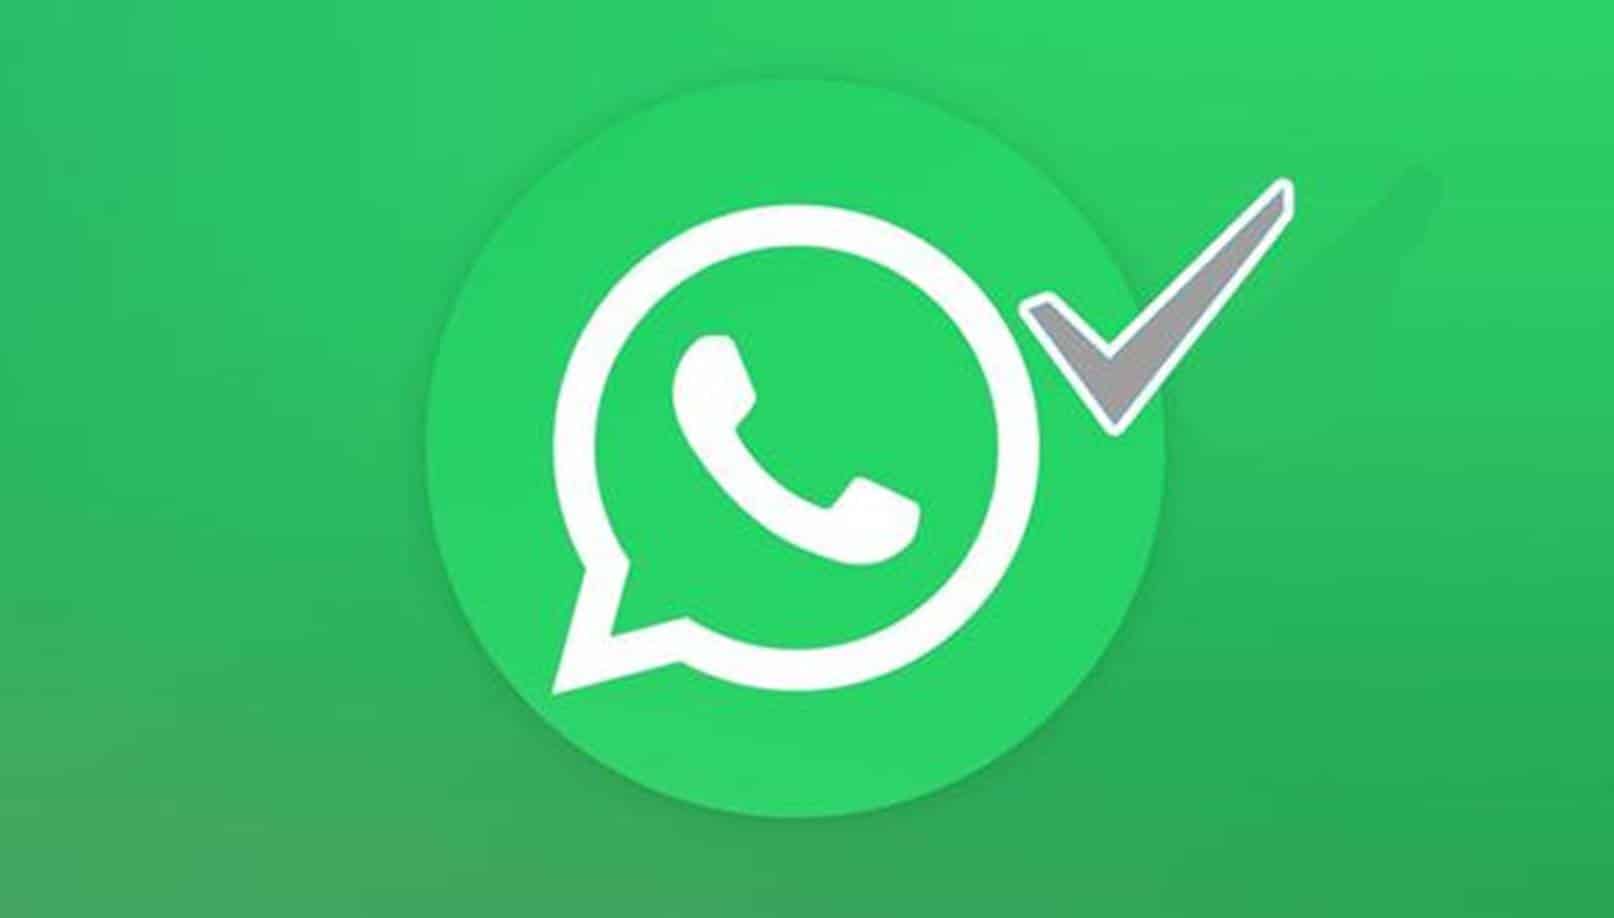 O que significa a verificação cinza no WhatsApp